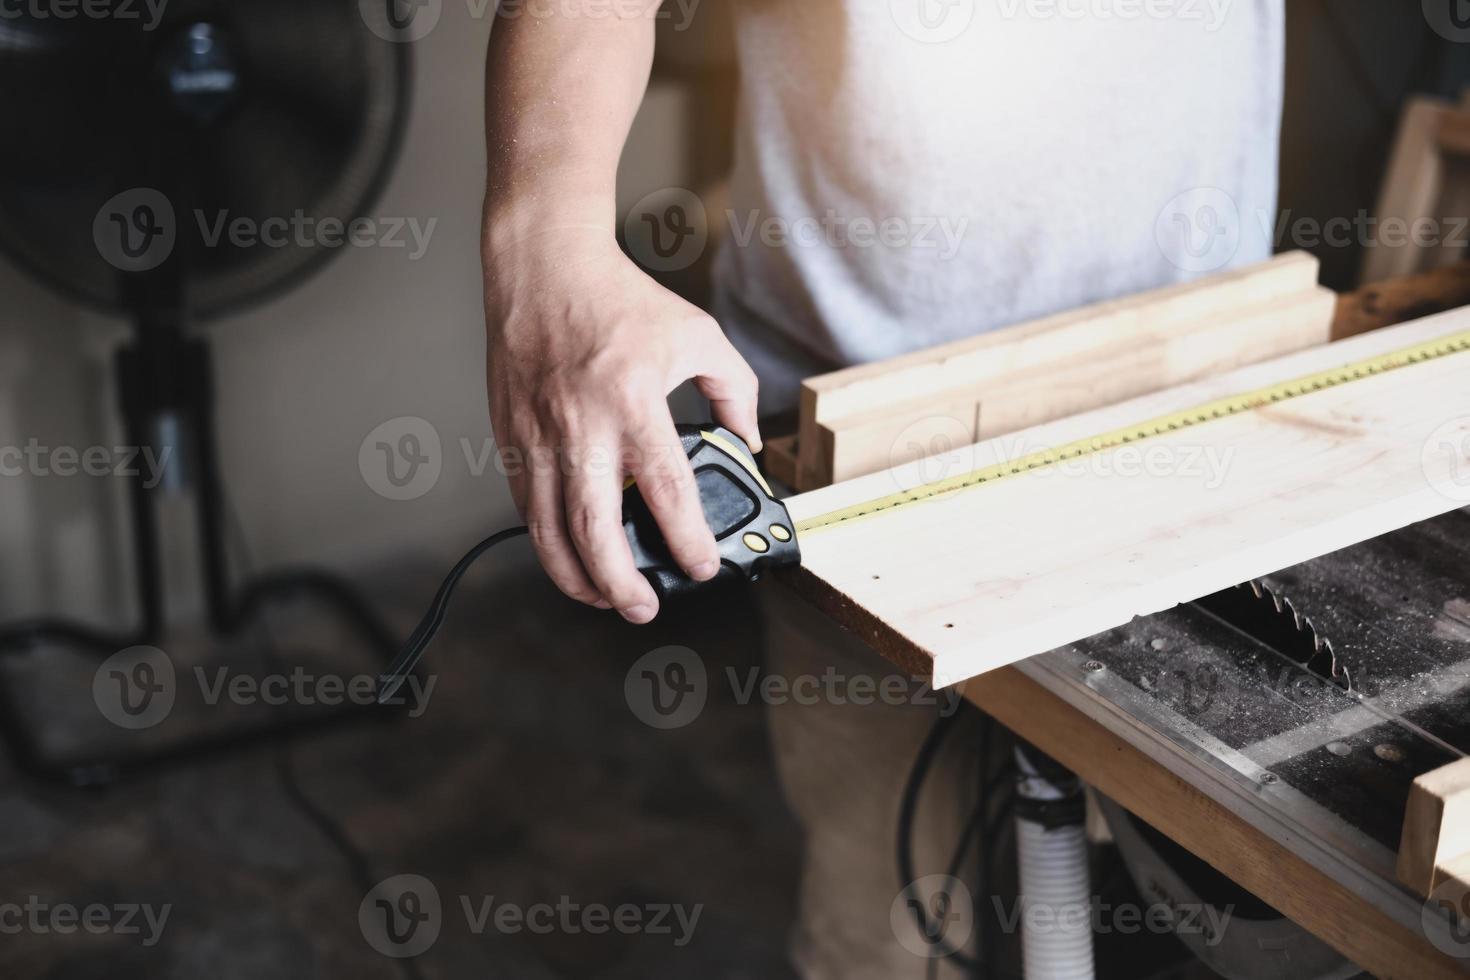 artesãos do conceito faça você mesmo usam uma fita métrica para montar peças de madeira para fazer mesas de madeira para os clientes. foto